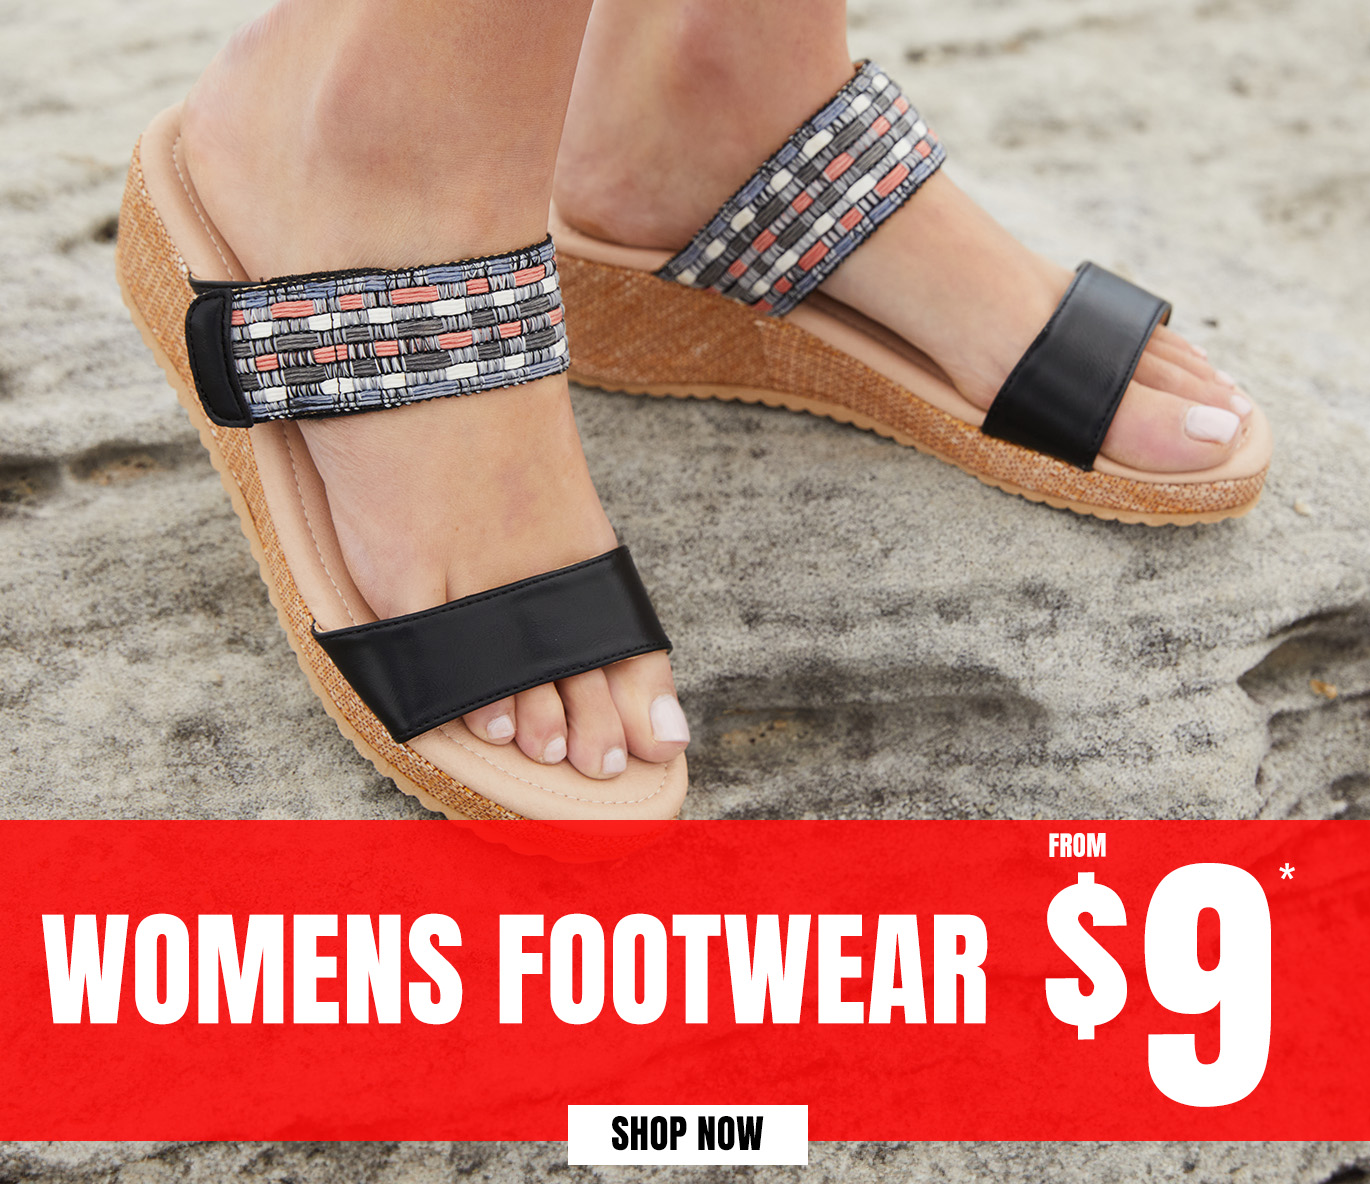 Rivers Womens Footwear form $9*